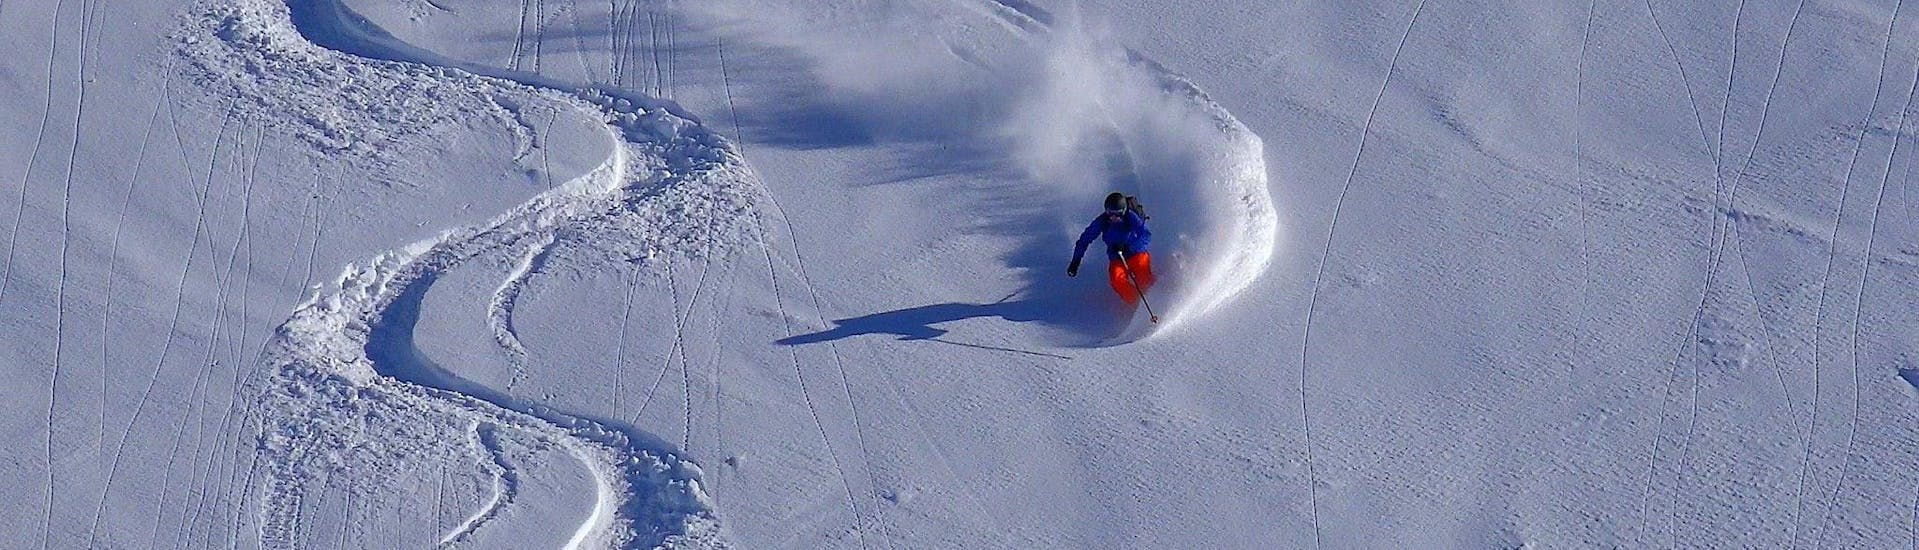 Cours particulier de ski freeride - Expérimentés.